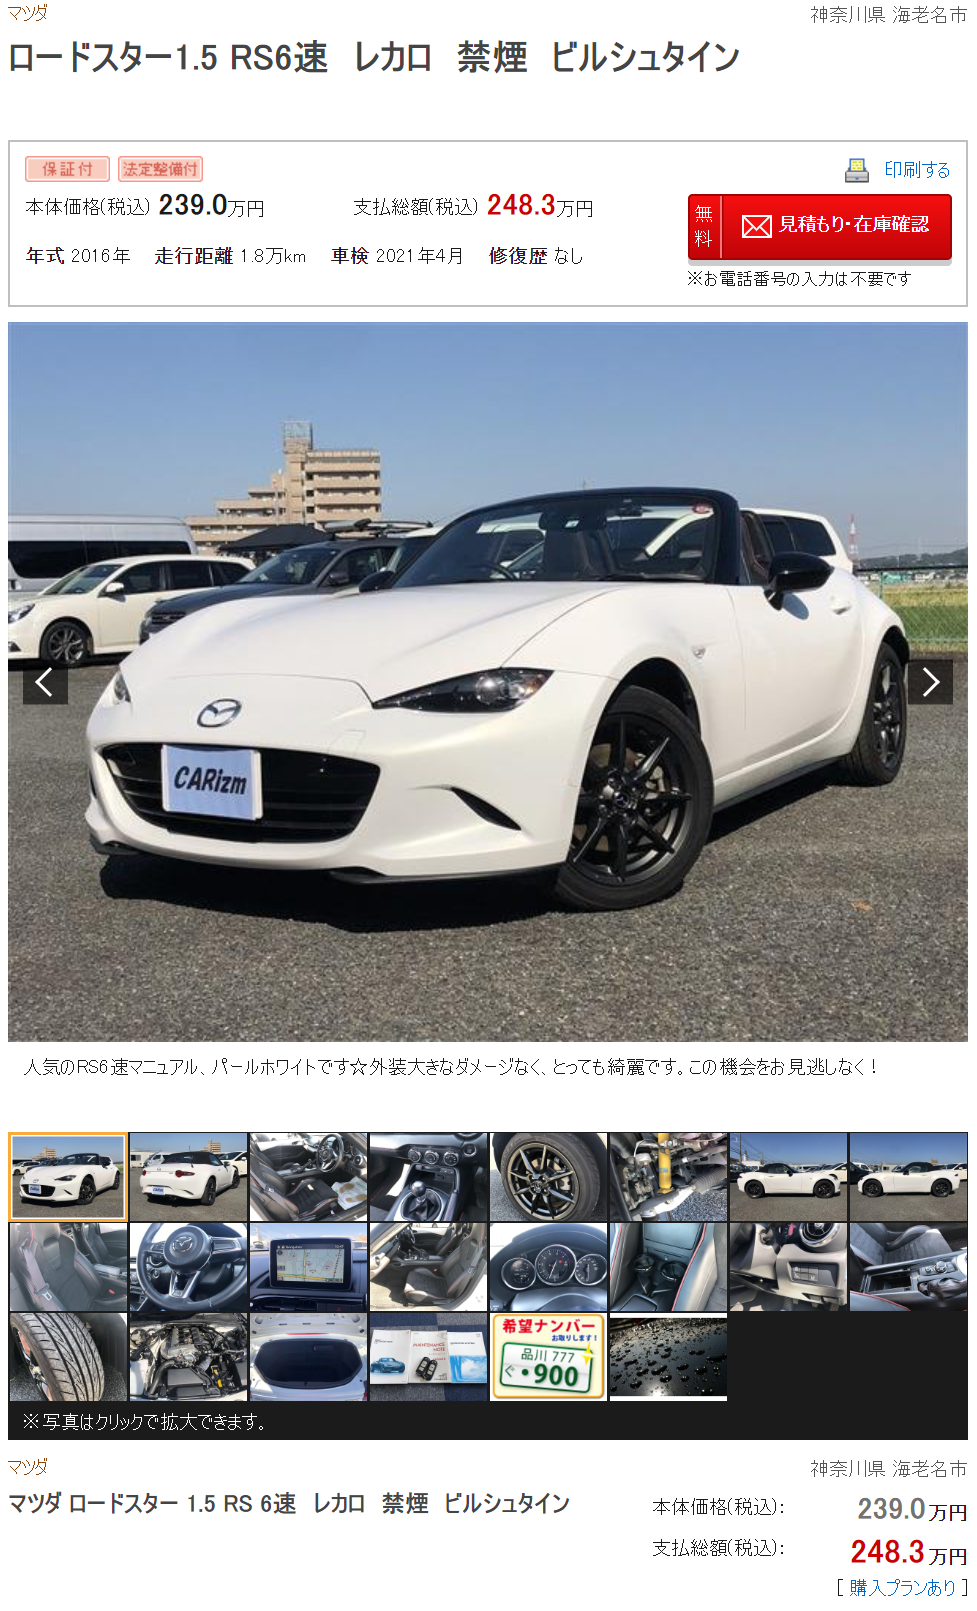 在日本买二手车有多爽 十万各种跑车 准新埃尔法二十多万随便买